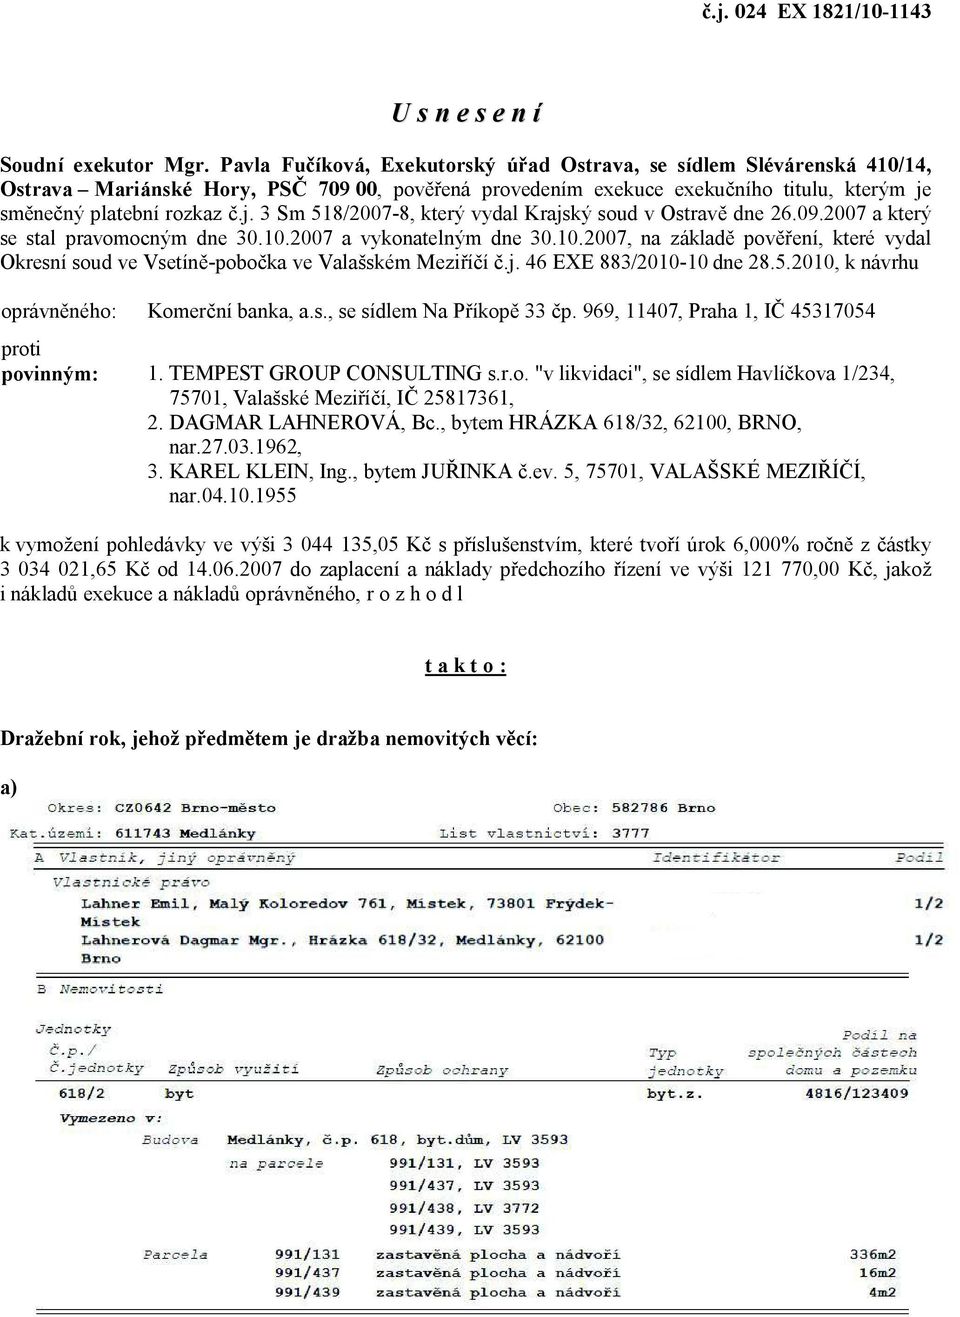 sm ne ný platební rozkaz.j. 3 Sm 518/2007-8, který vydal Krajský soud v Ostrav dne 26.09.2007 a který se stal pravomocným dne 30.10.